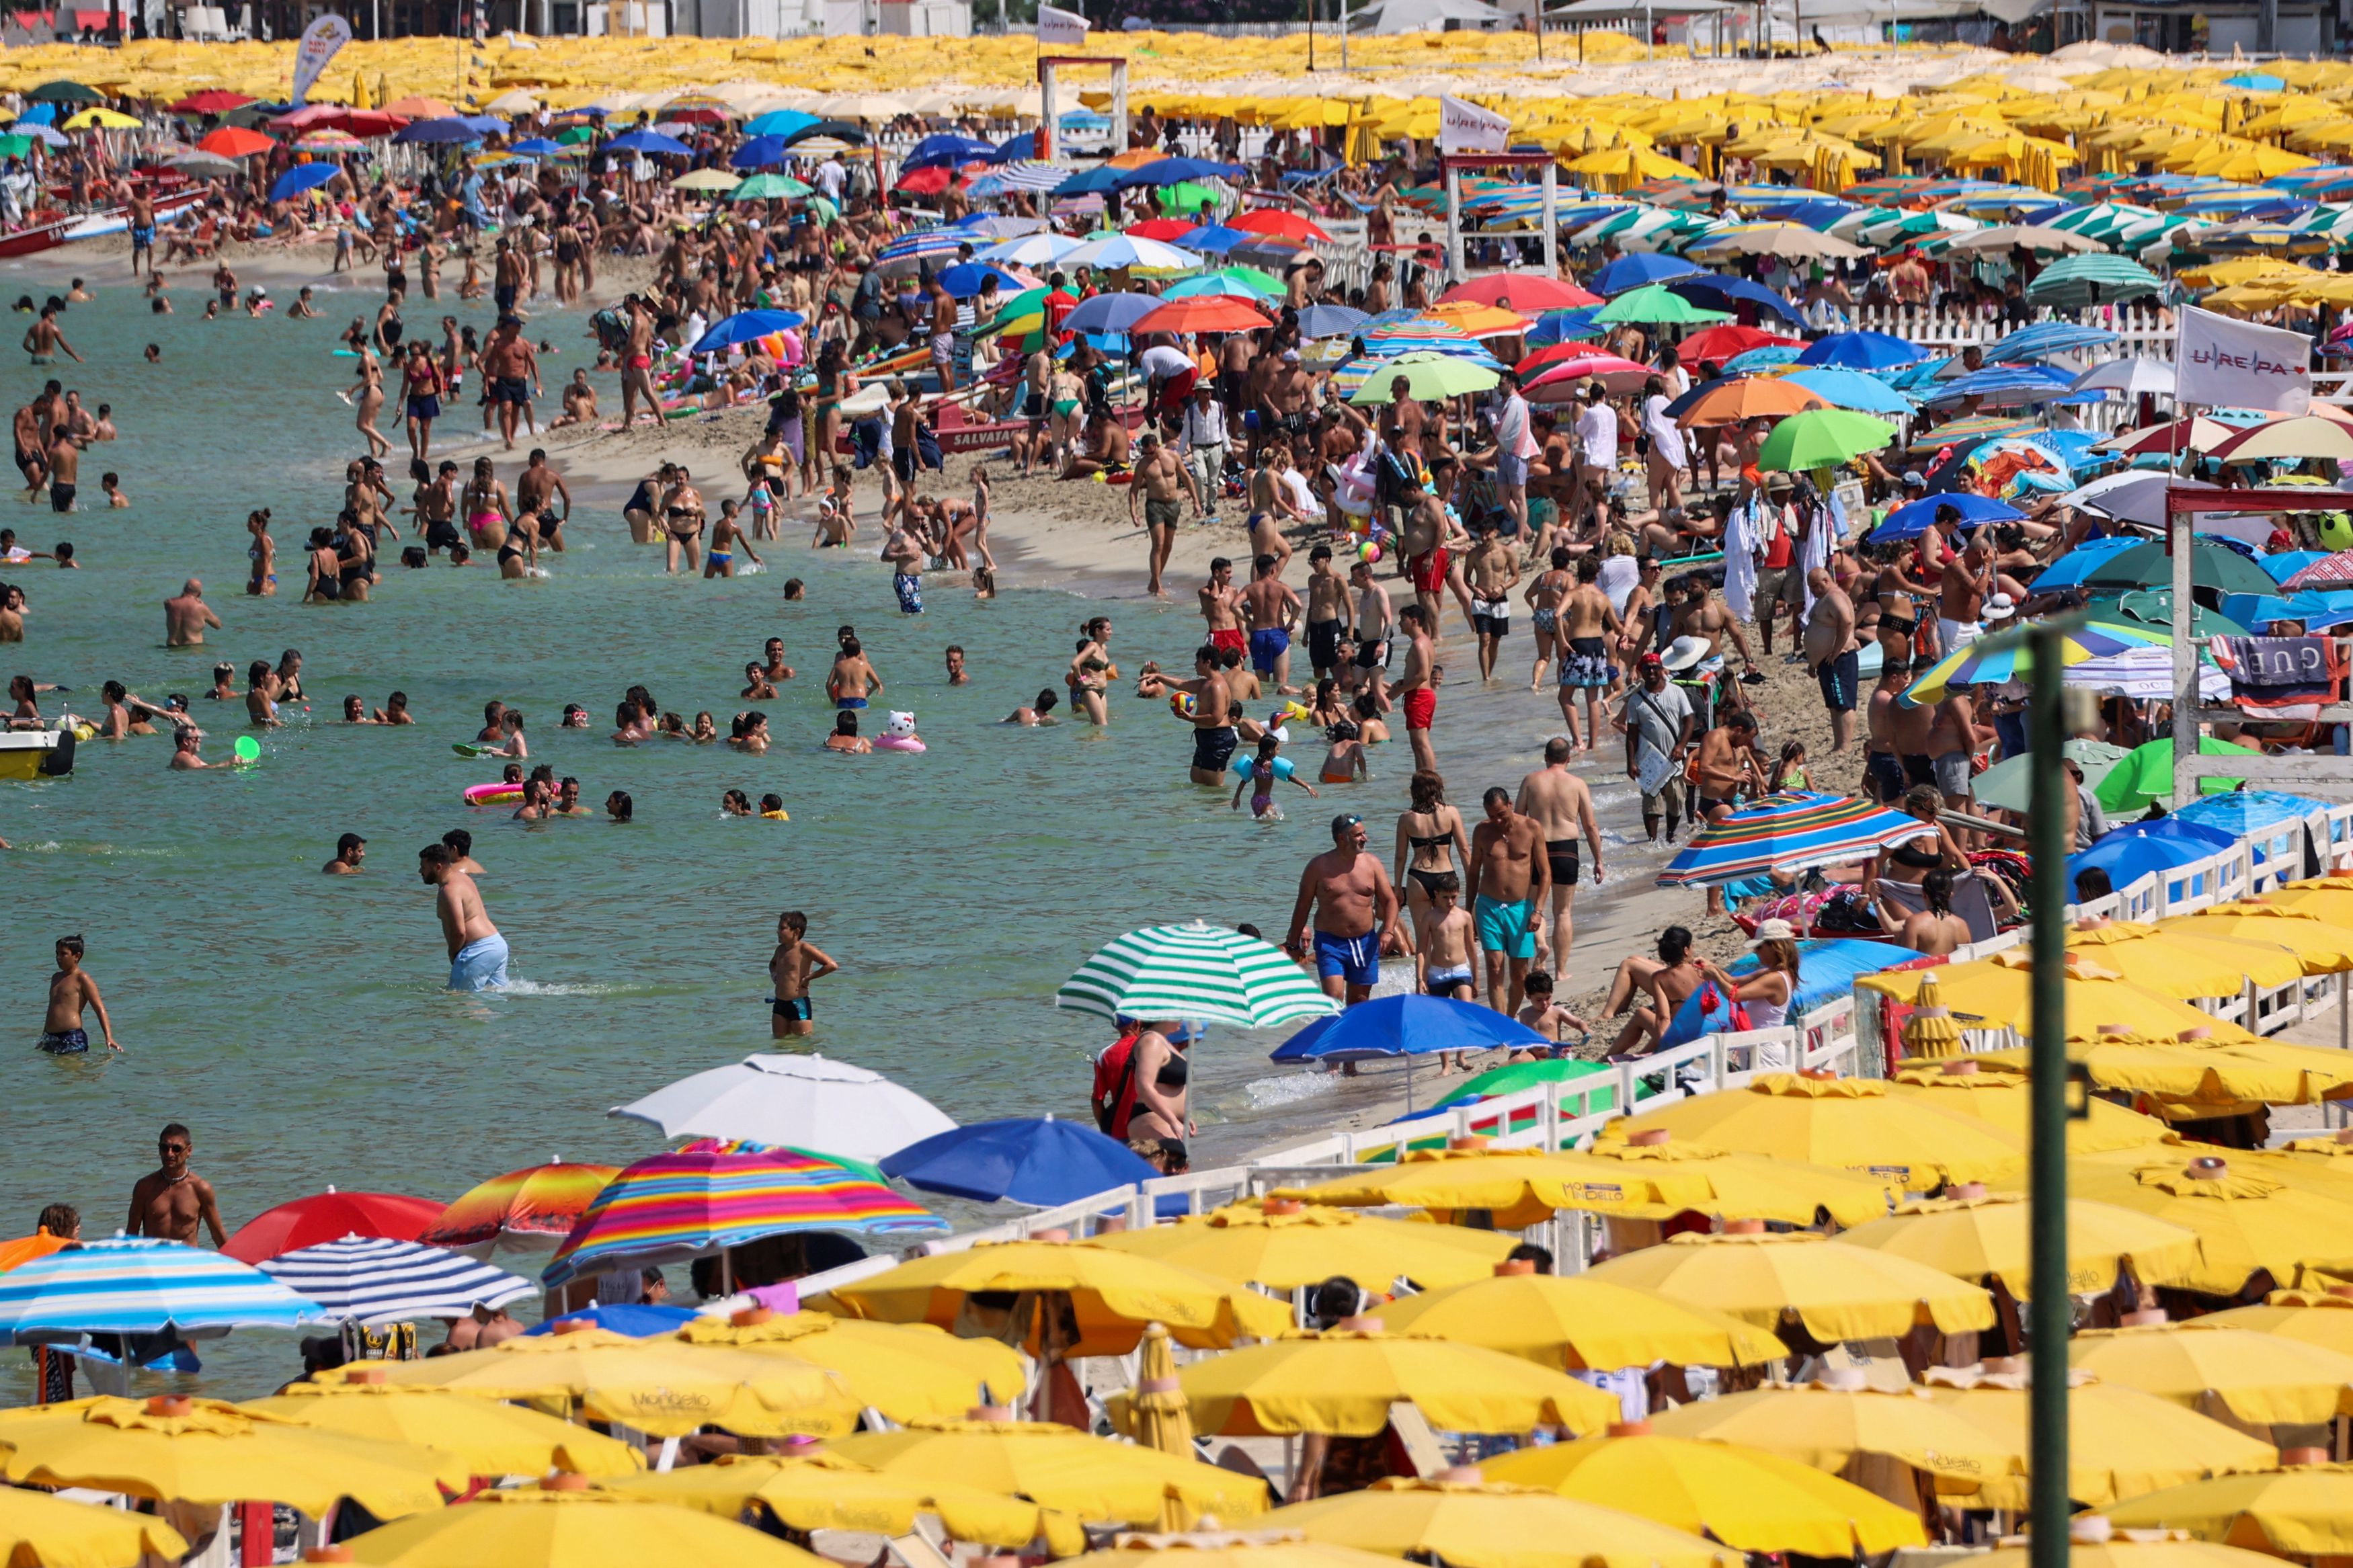 Μπορεί το... αποπνικτικό καλοκαίρι της Ευρώπης να στρέψει τους τουρίστες σε άλλους προορισμούς;